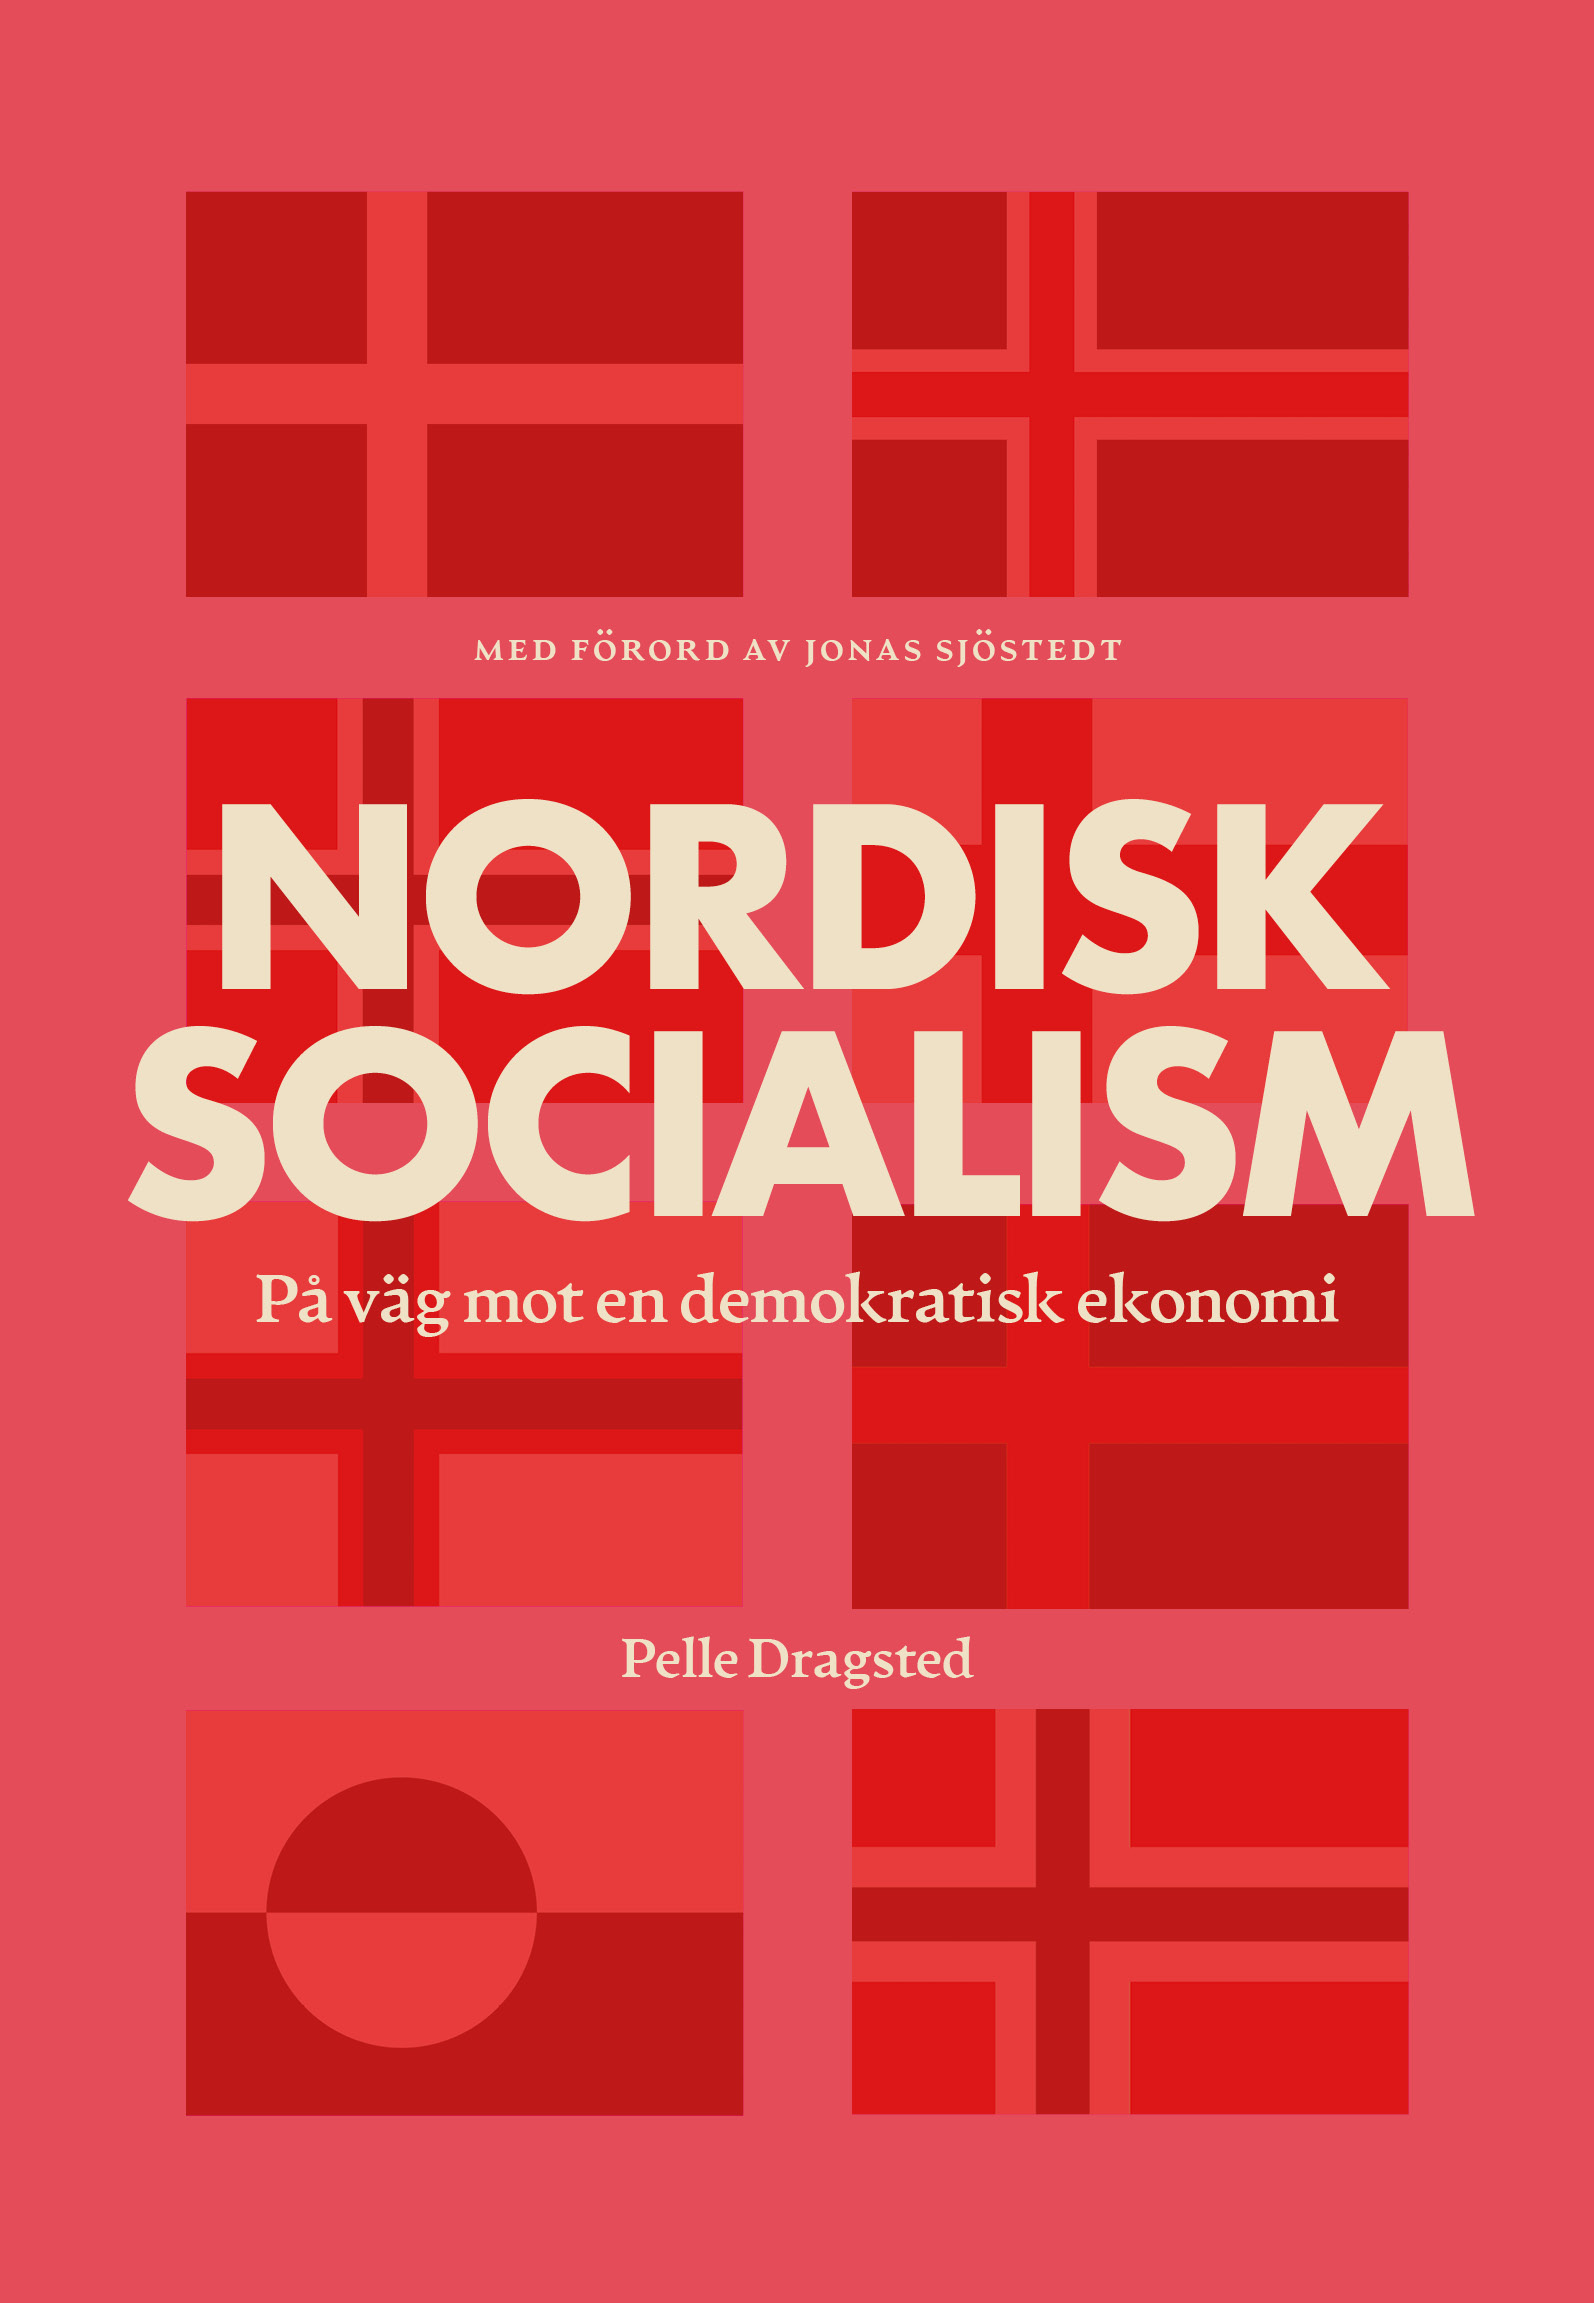 Pelle Dragsted. Nordisk socialism